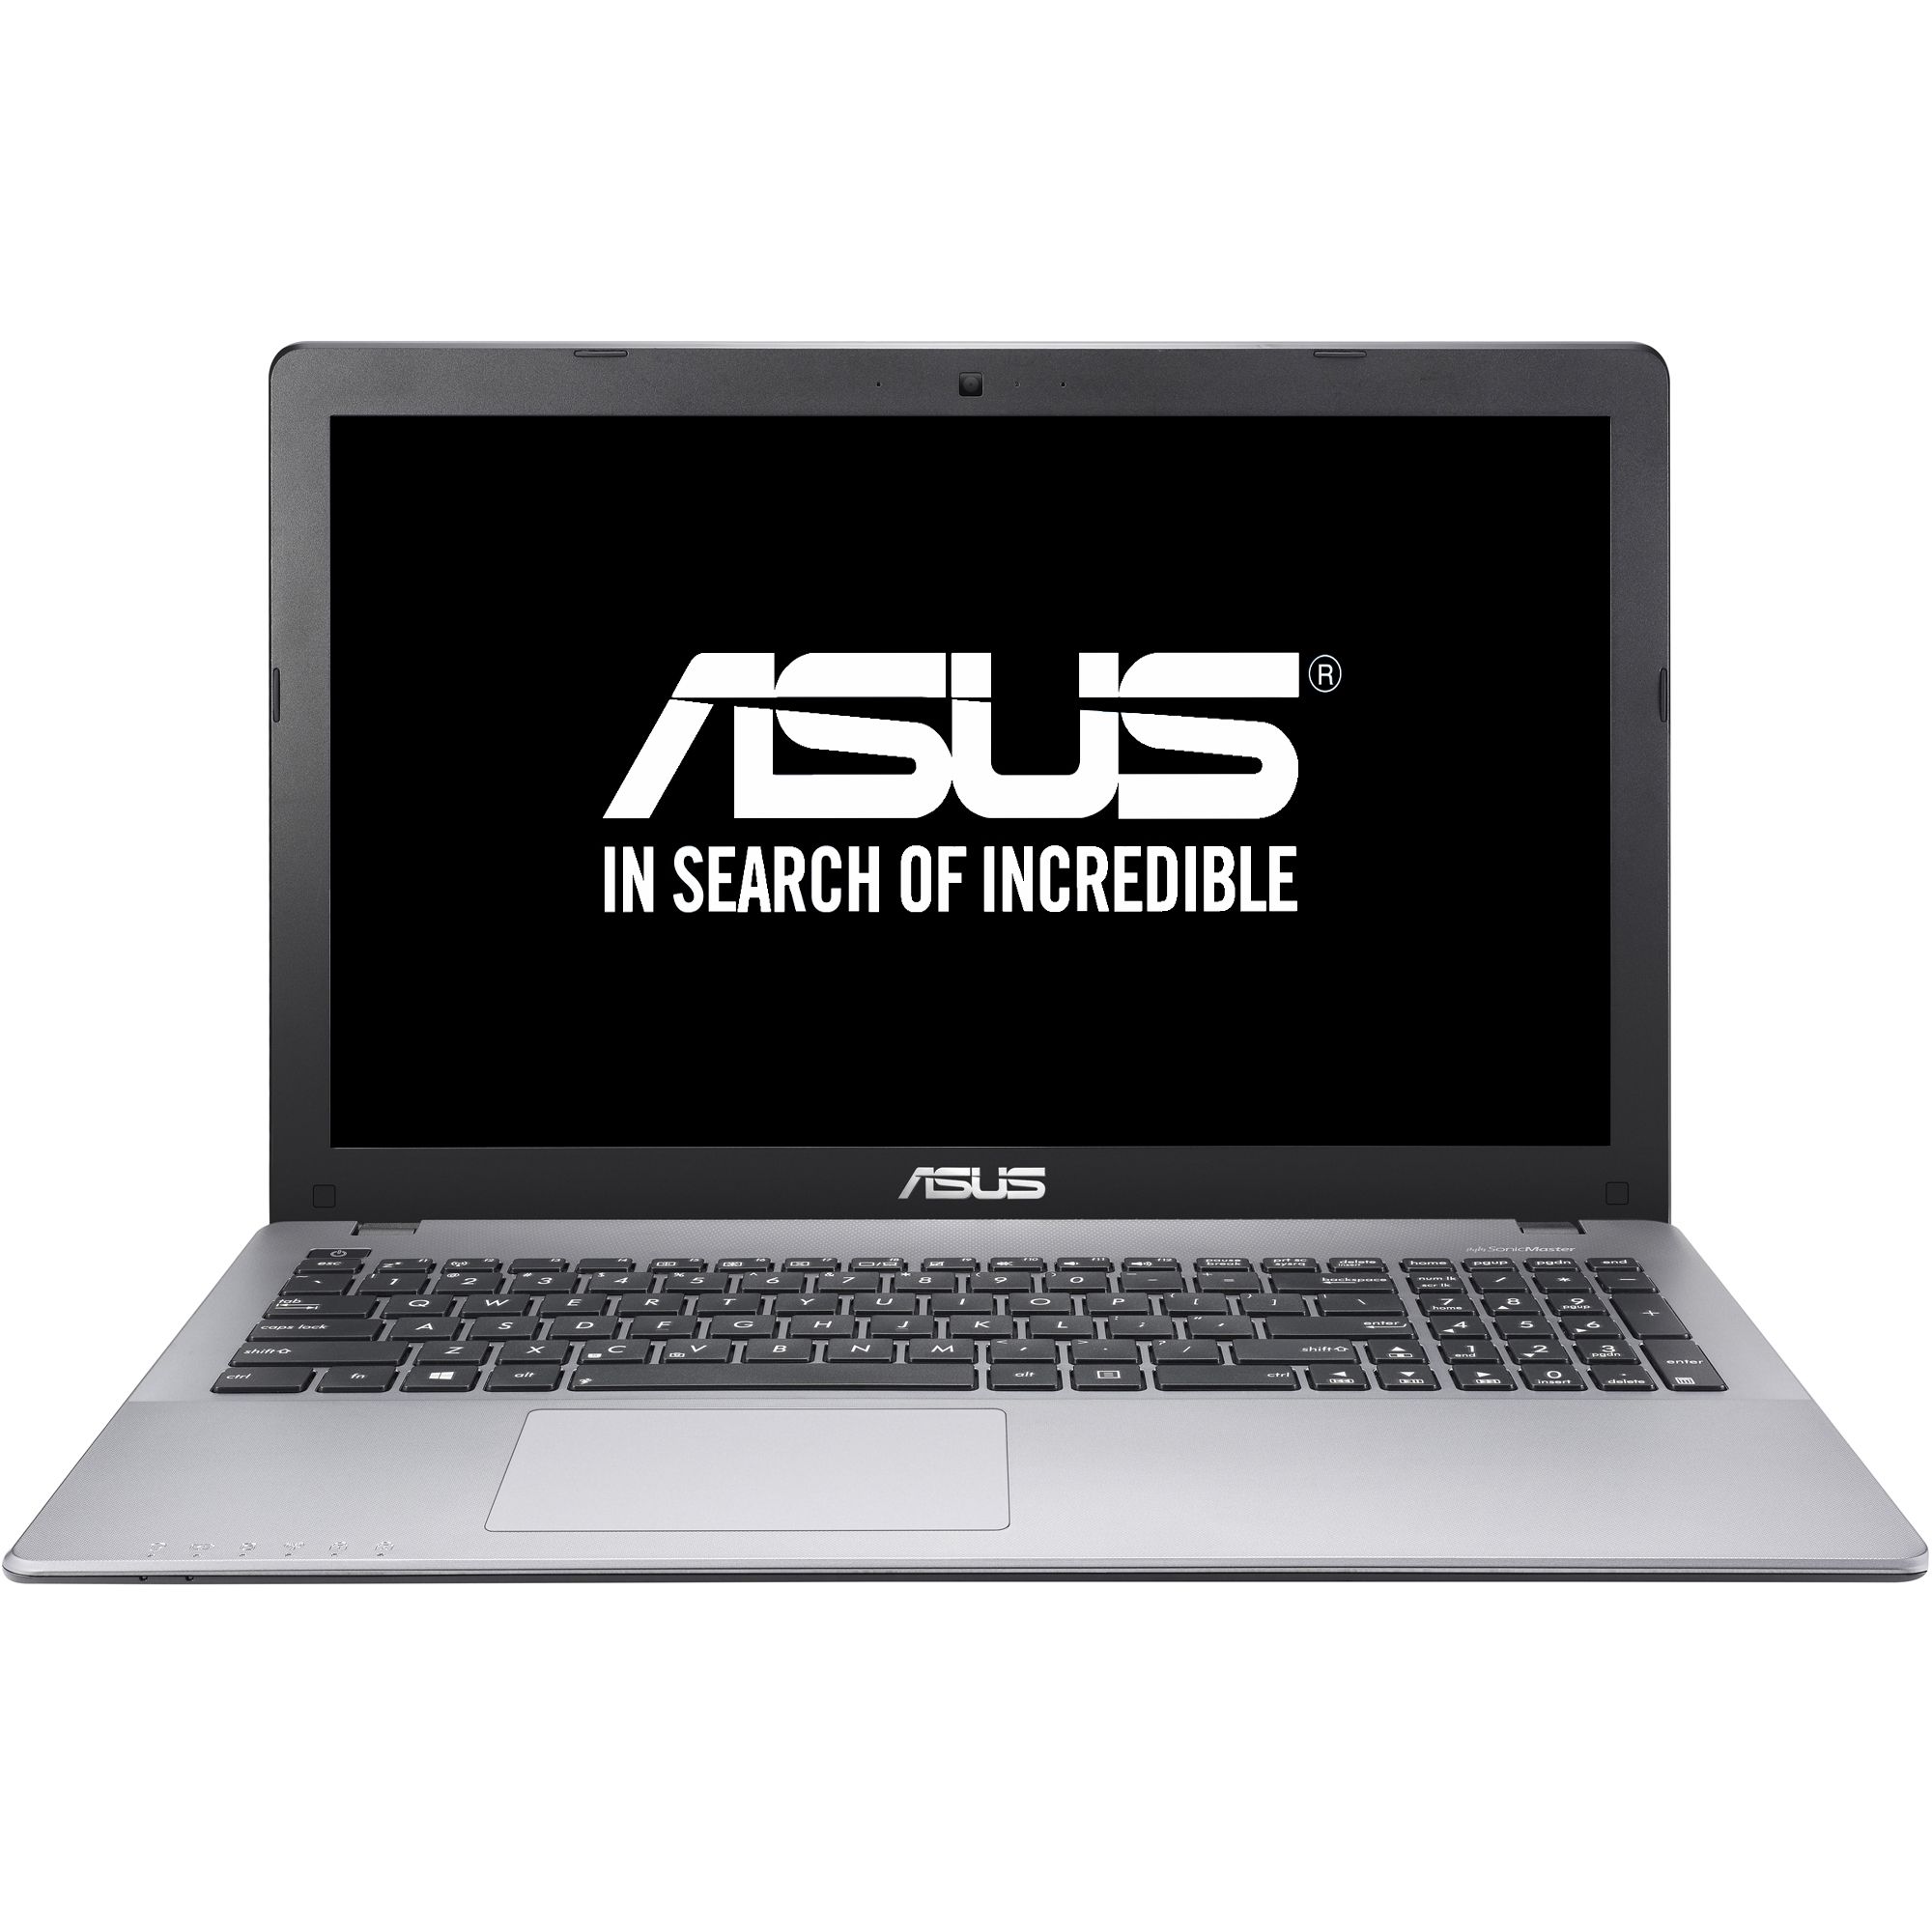  Laptop Asus X555LA-XX172D, Intel Core i3-4030U, 4GB DDR3, HDD 500GB, Intel HD Graphics, Free DOS 